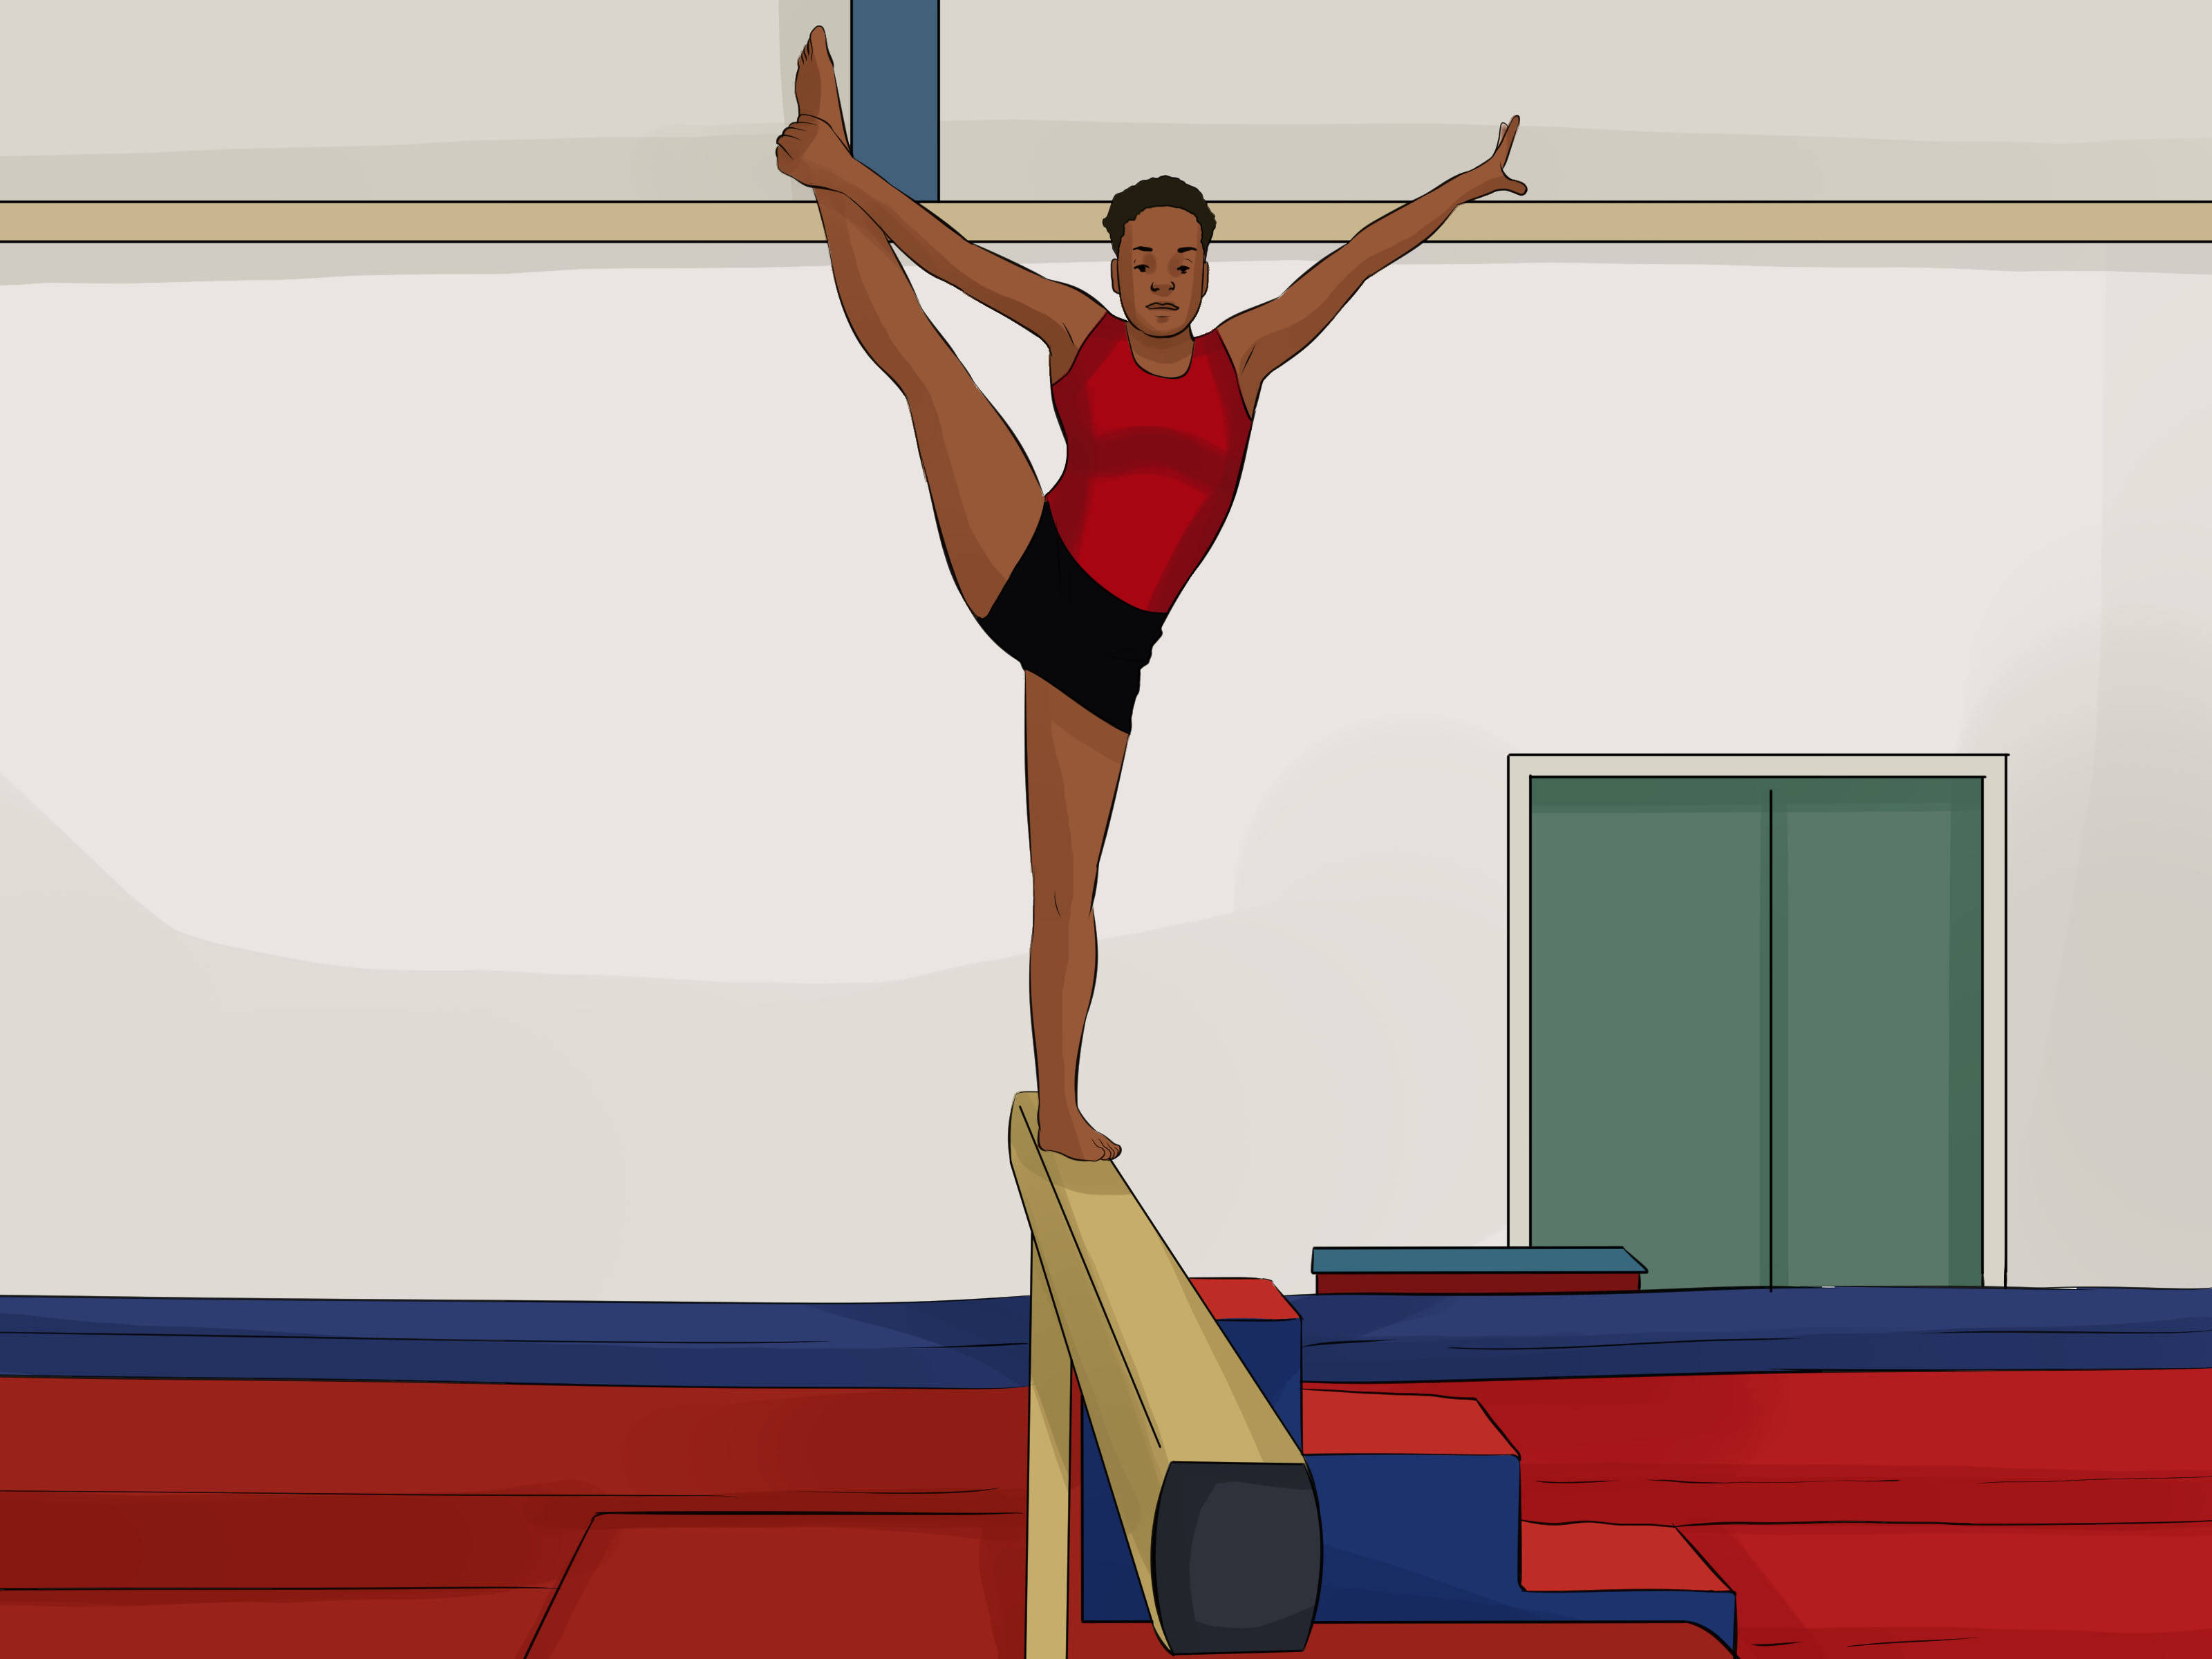 Сохранение равновесия гимнаста. Упражнения на бревне. Упражнения на гимнастическом бревне. Упражнения на равновесие на гимнастическом бревне. Упражнения на бревне спортивная гимнастика.